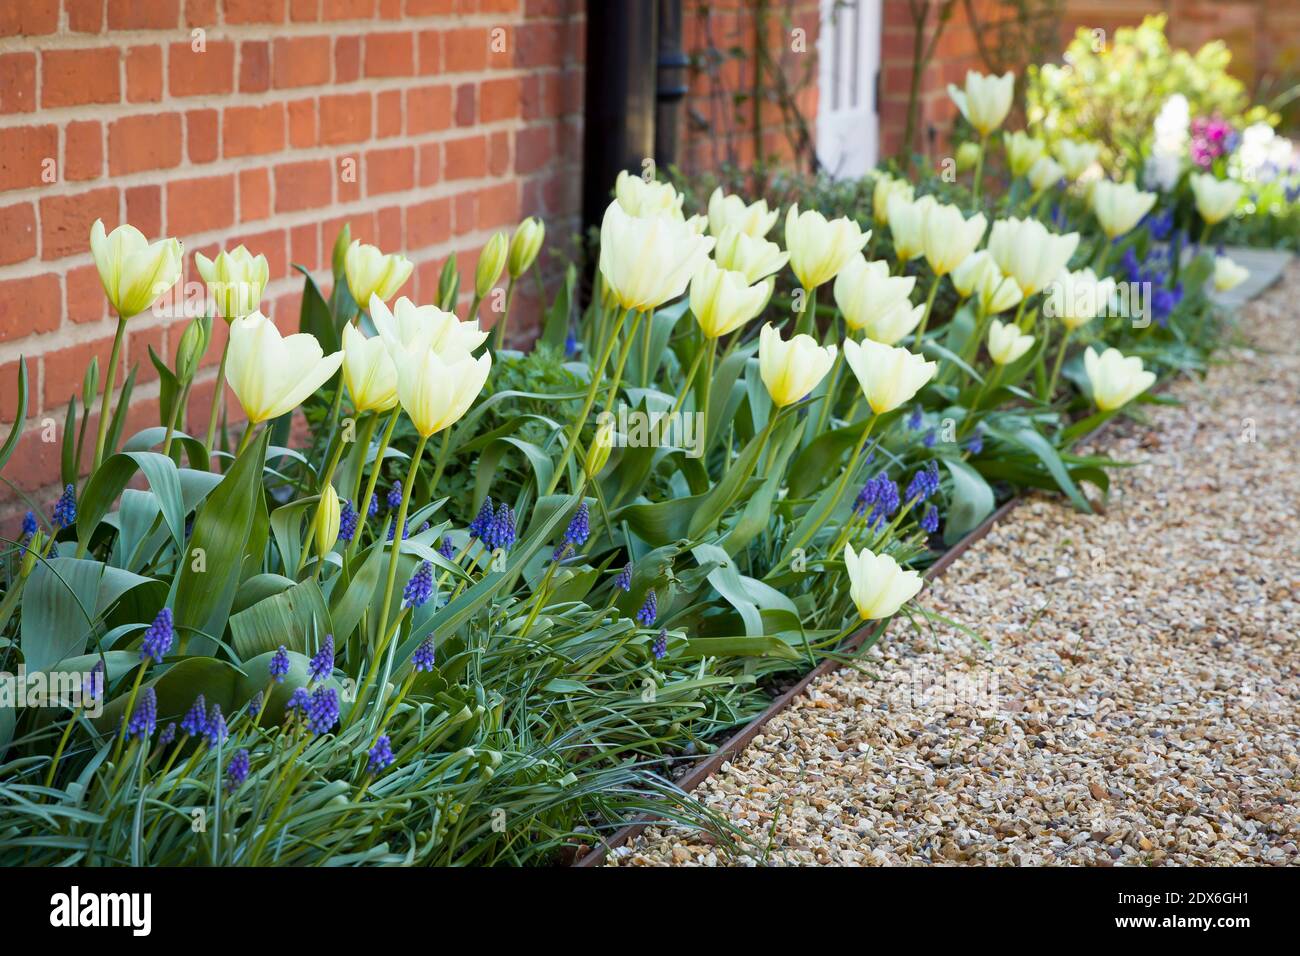 Tulipani e muscari (giacinto d'uva) che crescono in un giardino fiorito, letto di fiori primaverili, Regno Unito Foto Stock